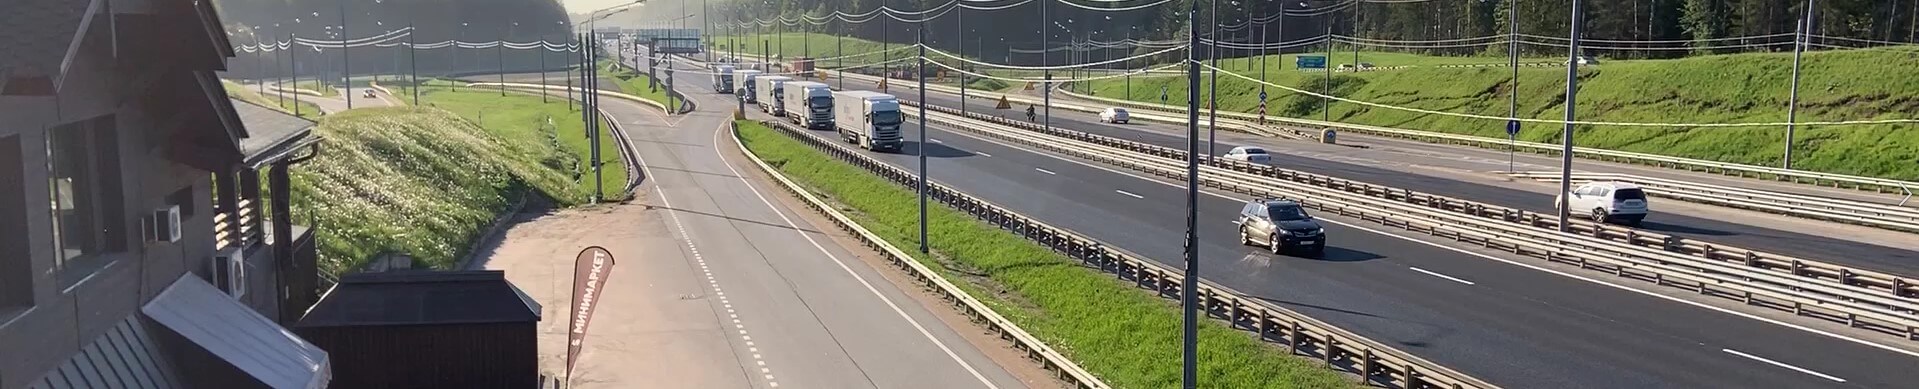 ALEV-TRANS Lastwagen auf der Autobahn